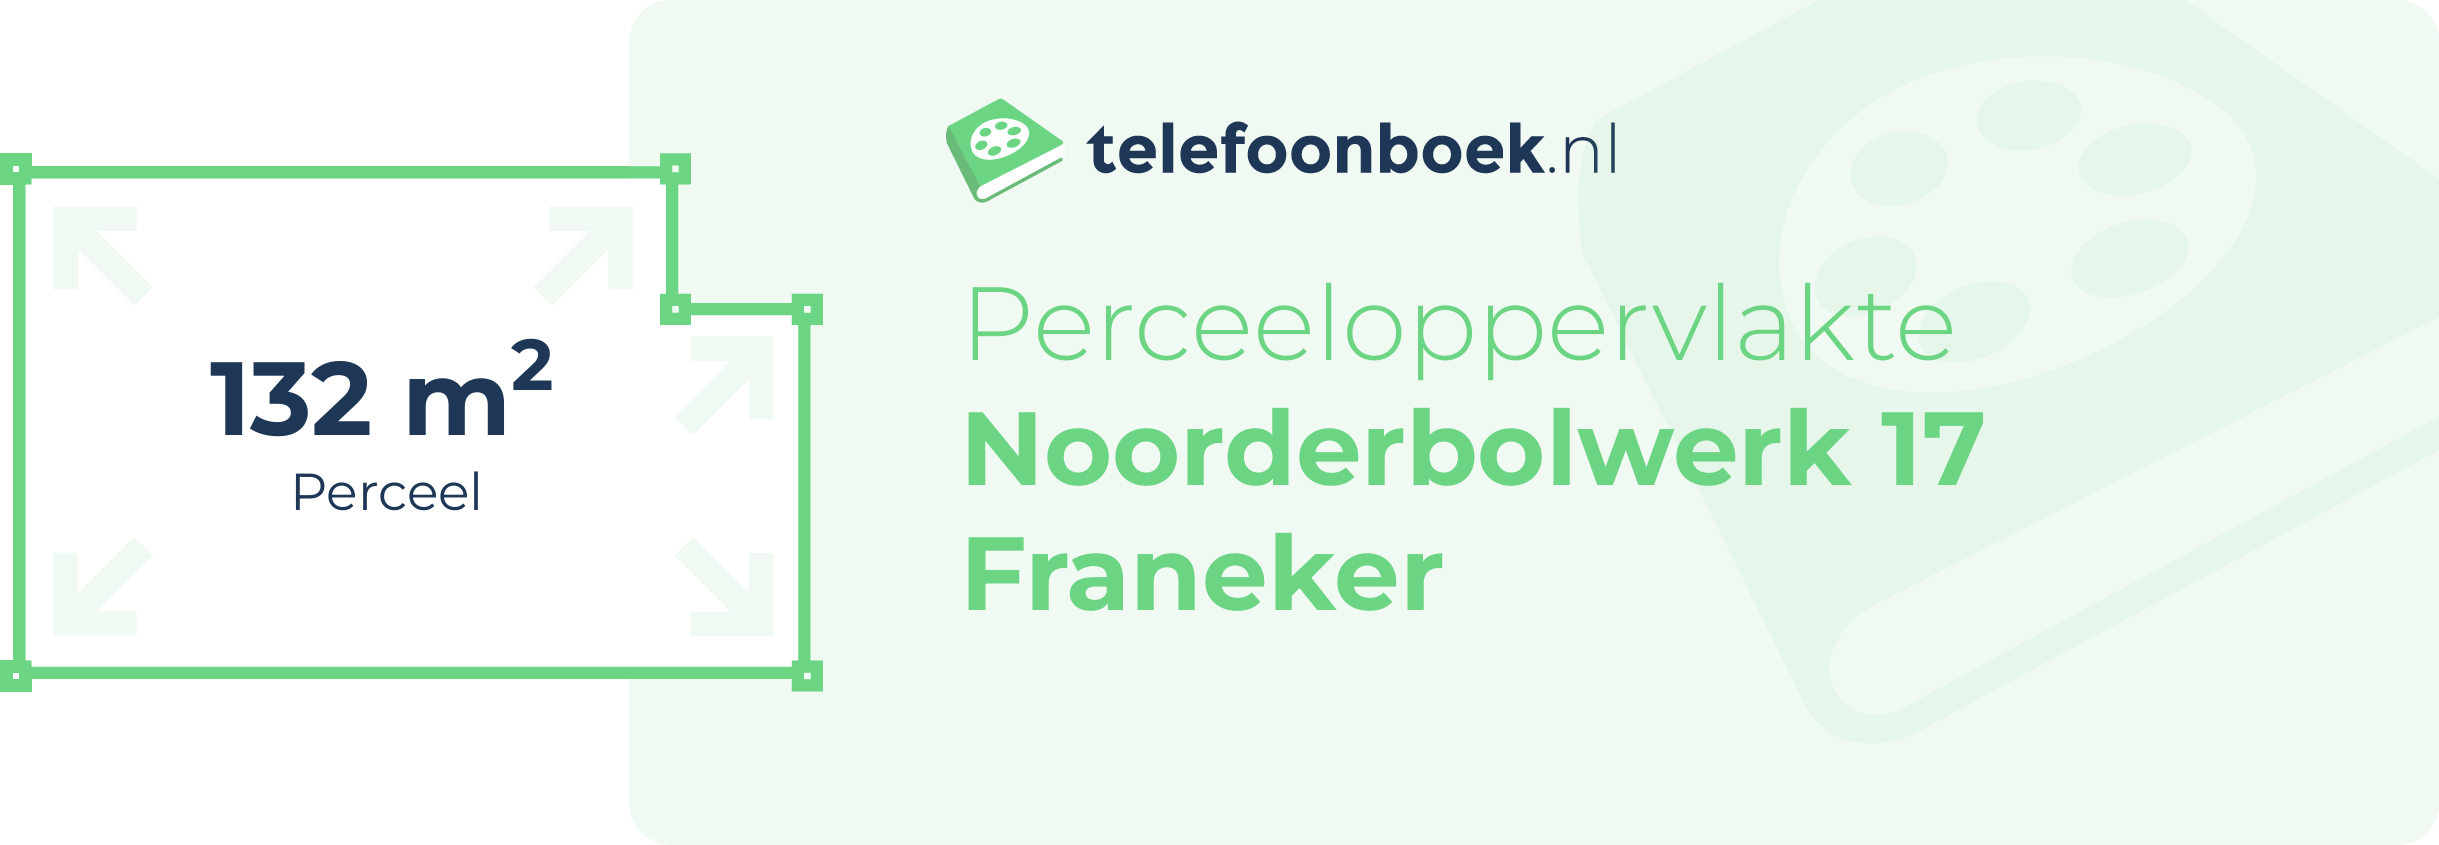 Perceeloppervlakte Noorderbolwerk 17 Franeker